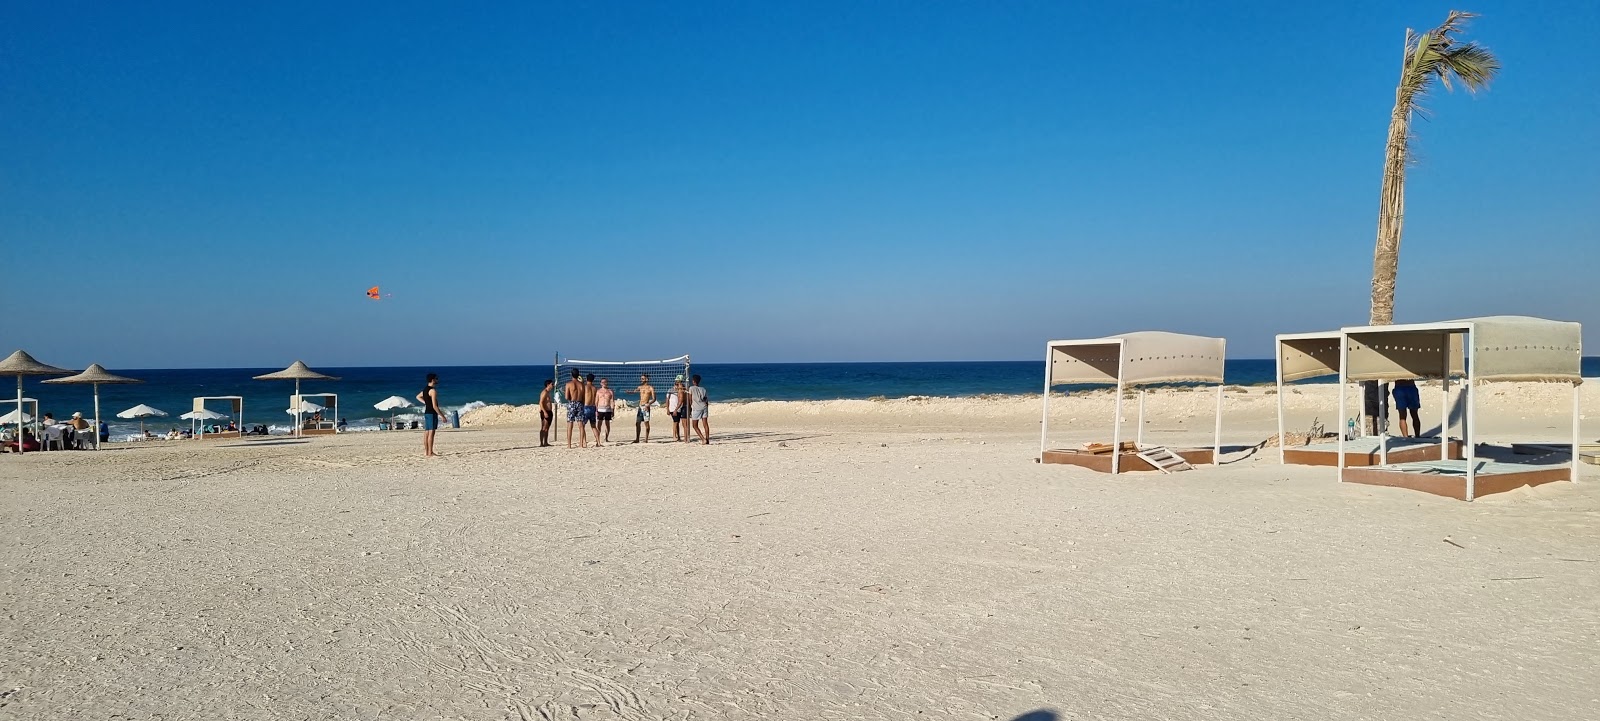 Costa Delona Beach'in fotoğrafı geniş plaj ile birlikte